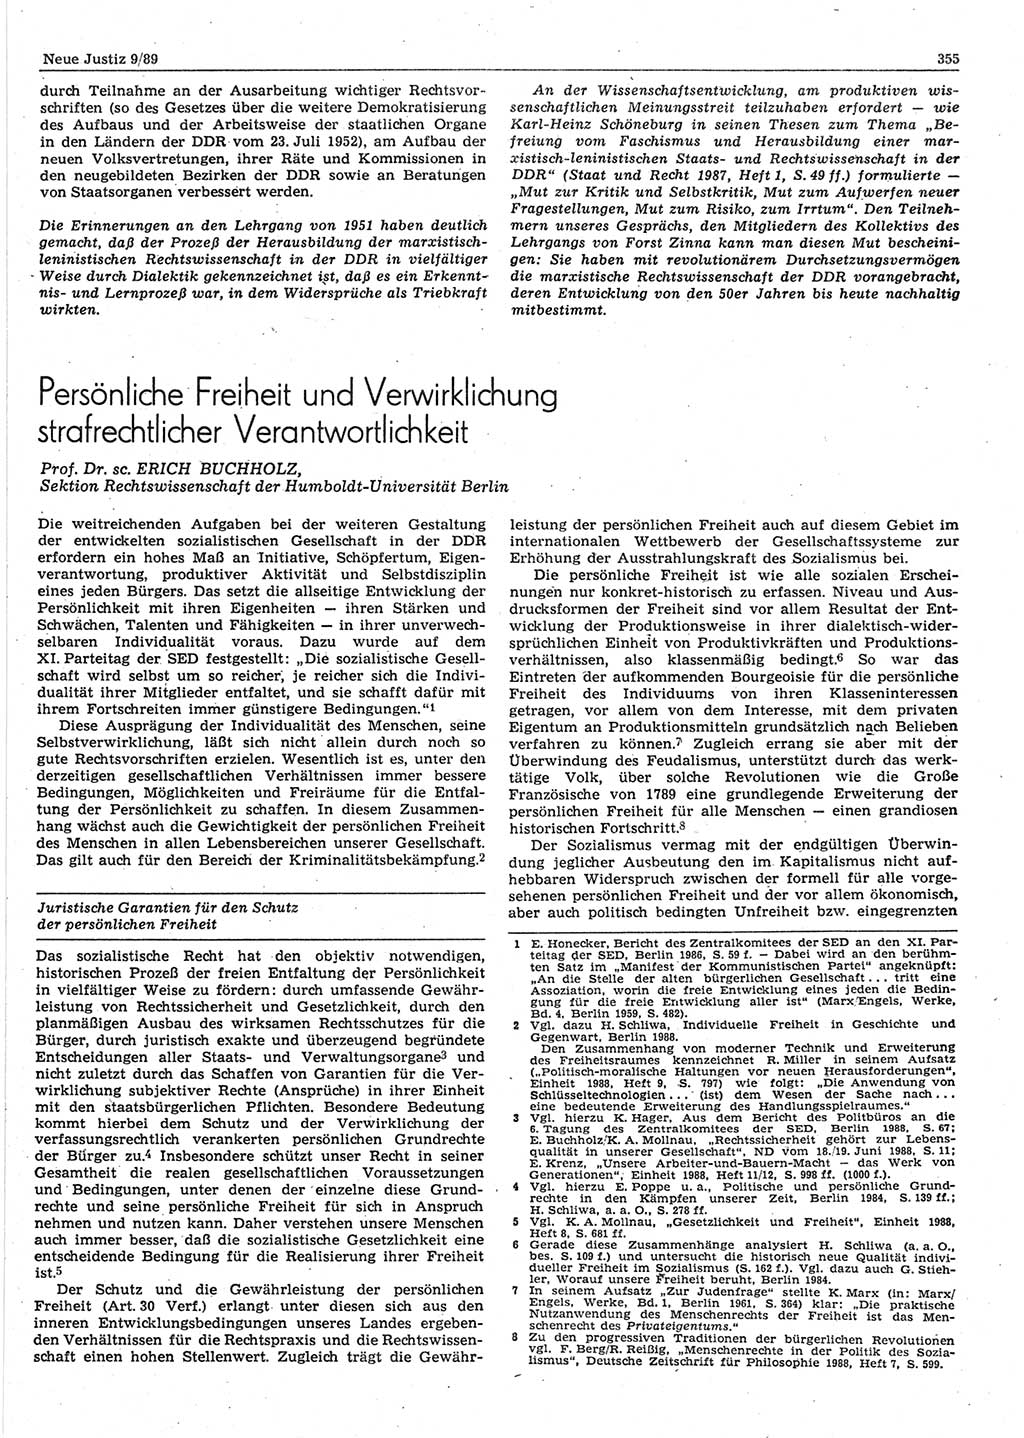 Neue Justiz (NJ), Zeitschrift für sozialistisches Recht und Gesetzlichkeit [Deutsche Demokratische Republik (DDR)], 43. Jahrgang 1989, Seite 355 (NJ DDR 1989, S. 355)